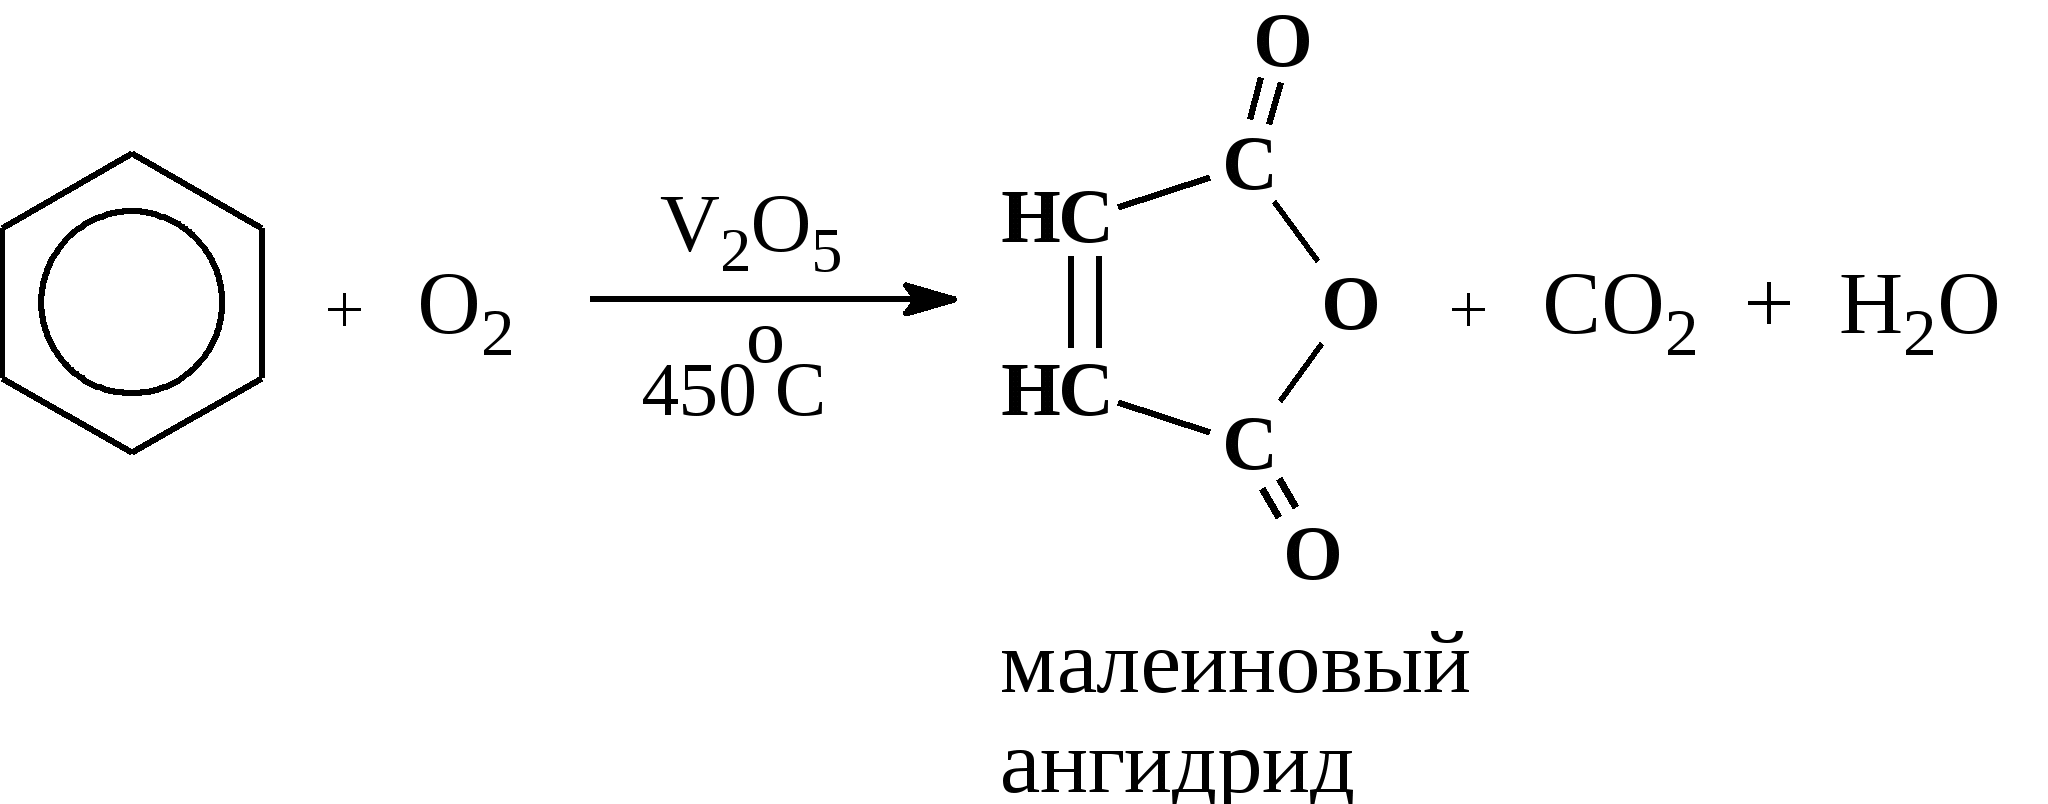 Каталитическое окисление бензола кислородом. Окисление бензола v2o5. Окисление бензола кислородом при катализаторе v2o5. Каталитическое окисление метилбензола.